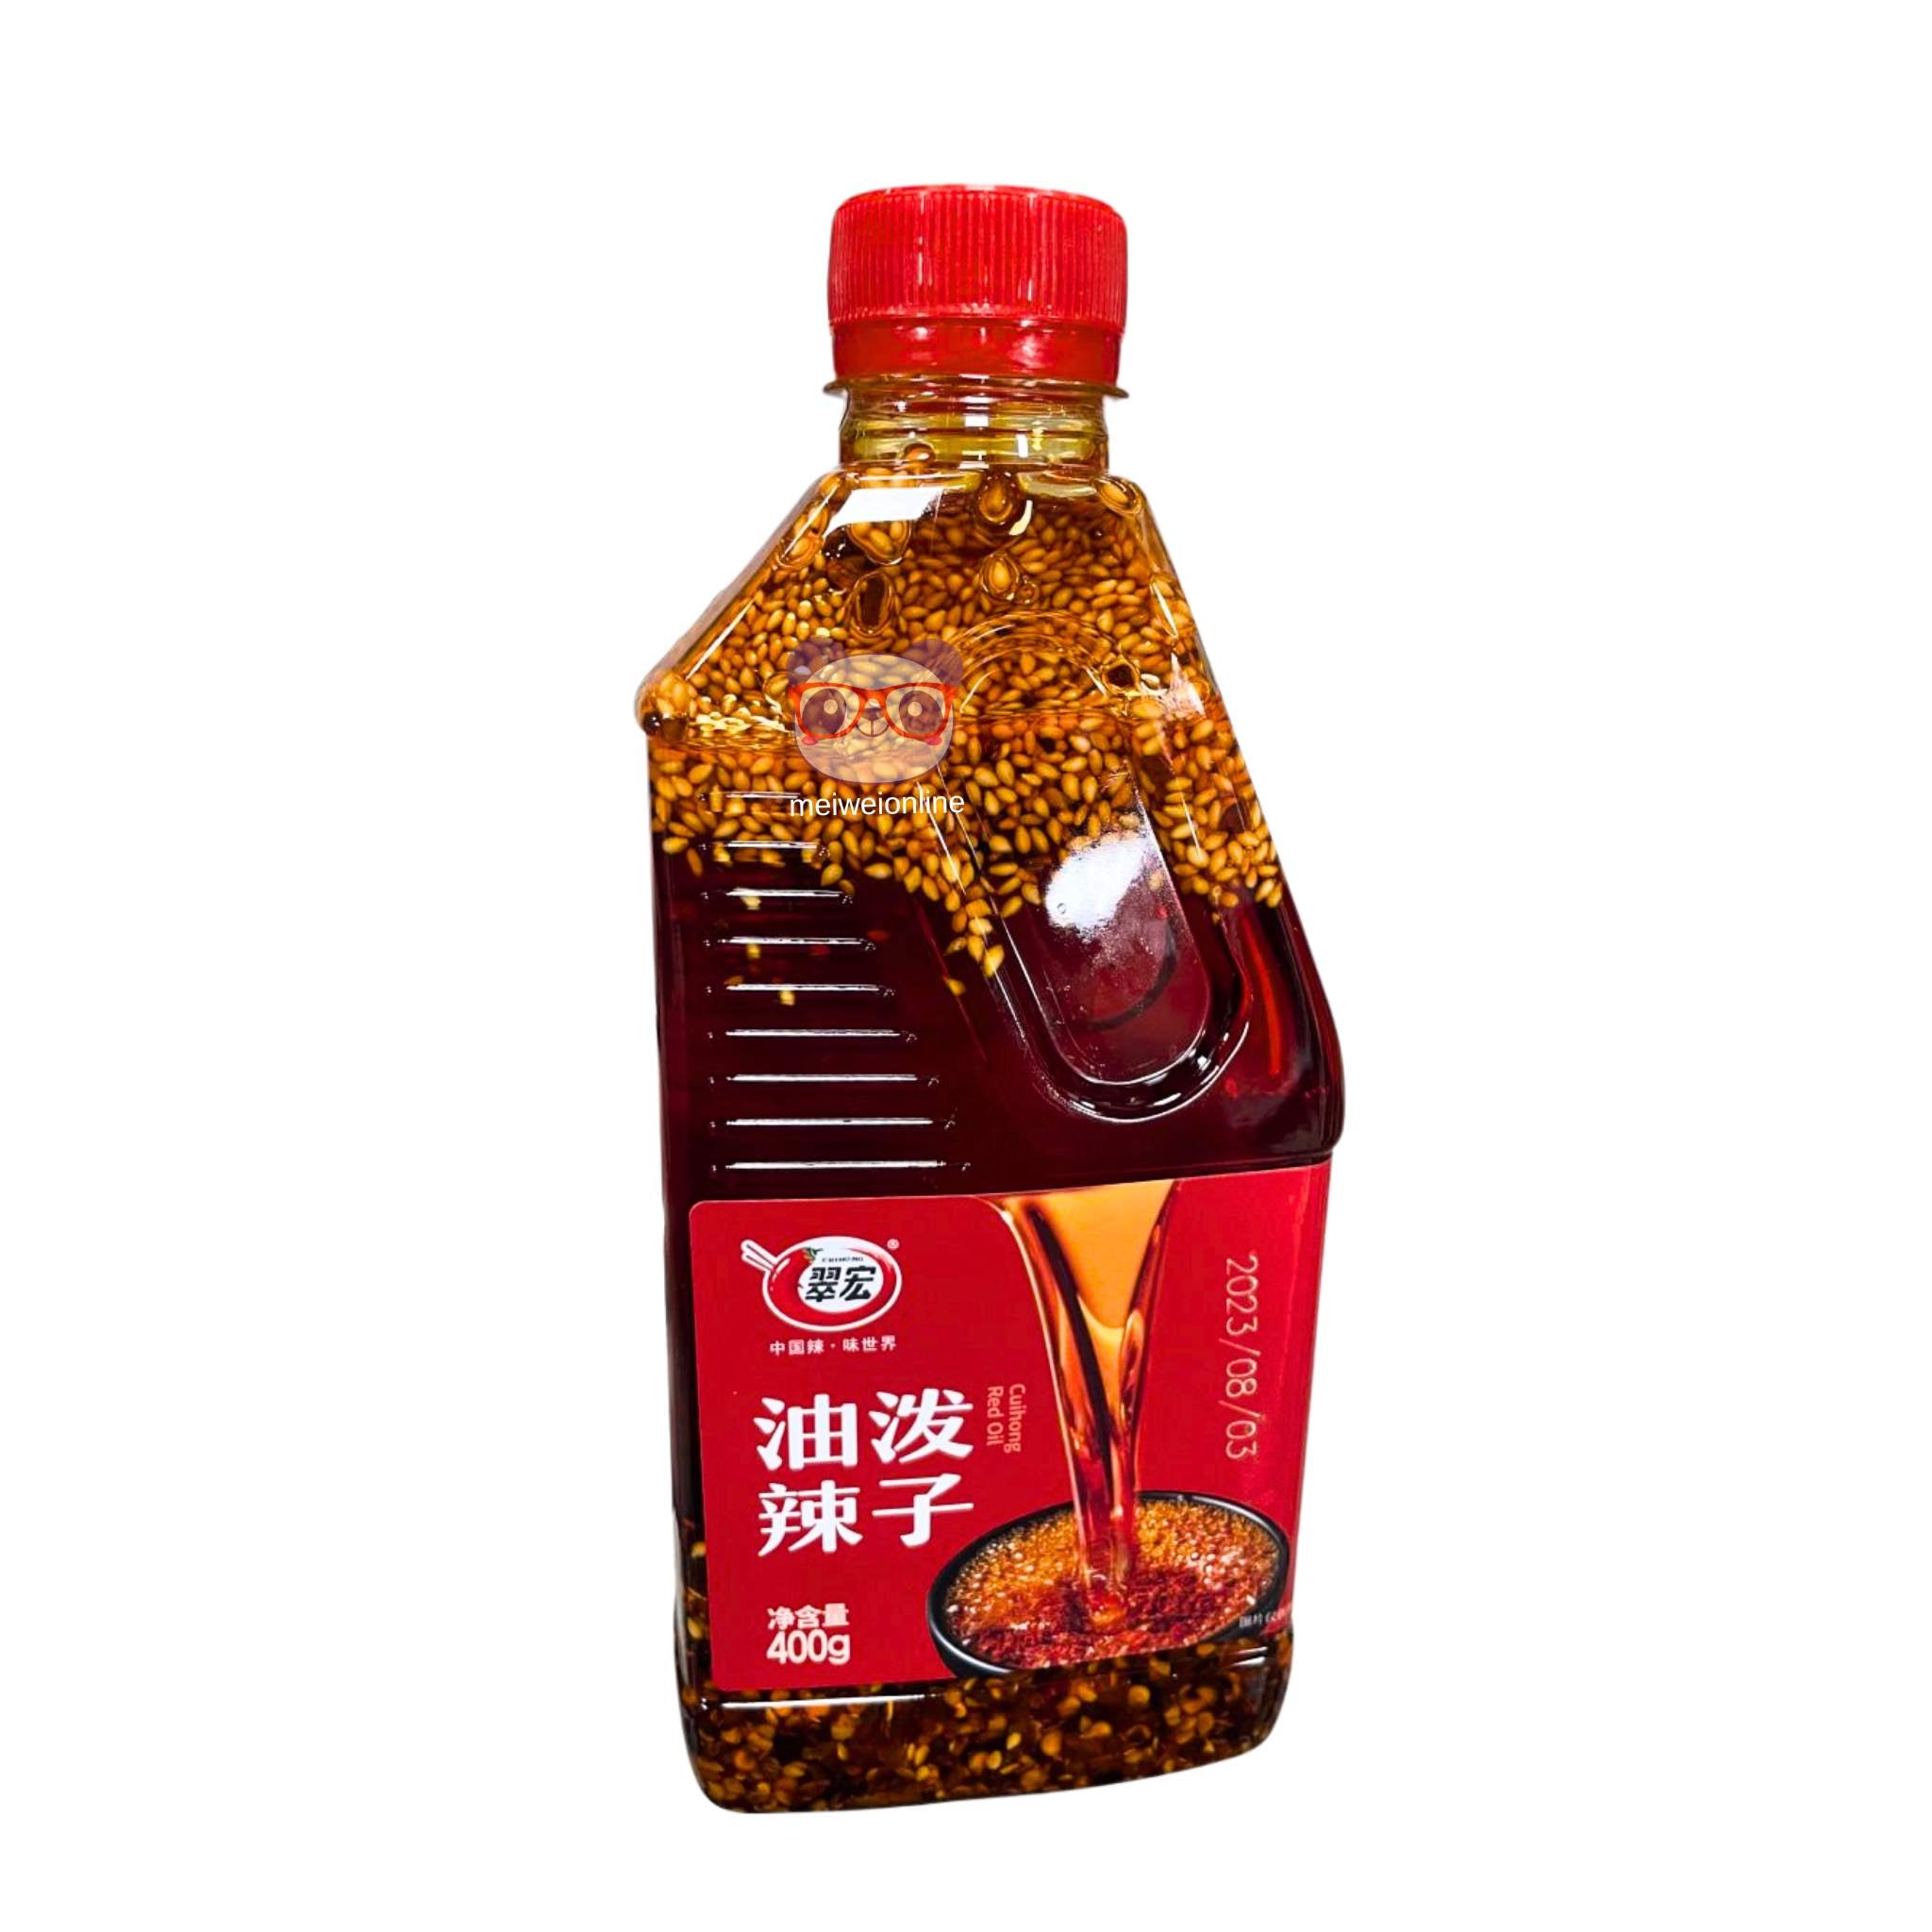 Óleo de pimenta Cui Hong 400g